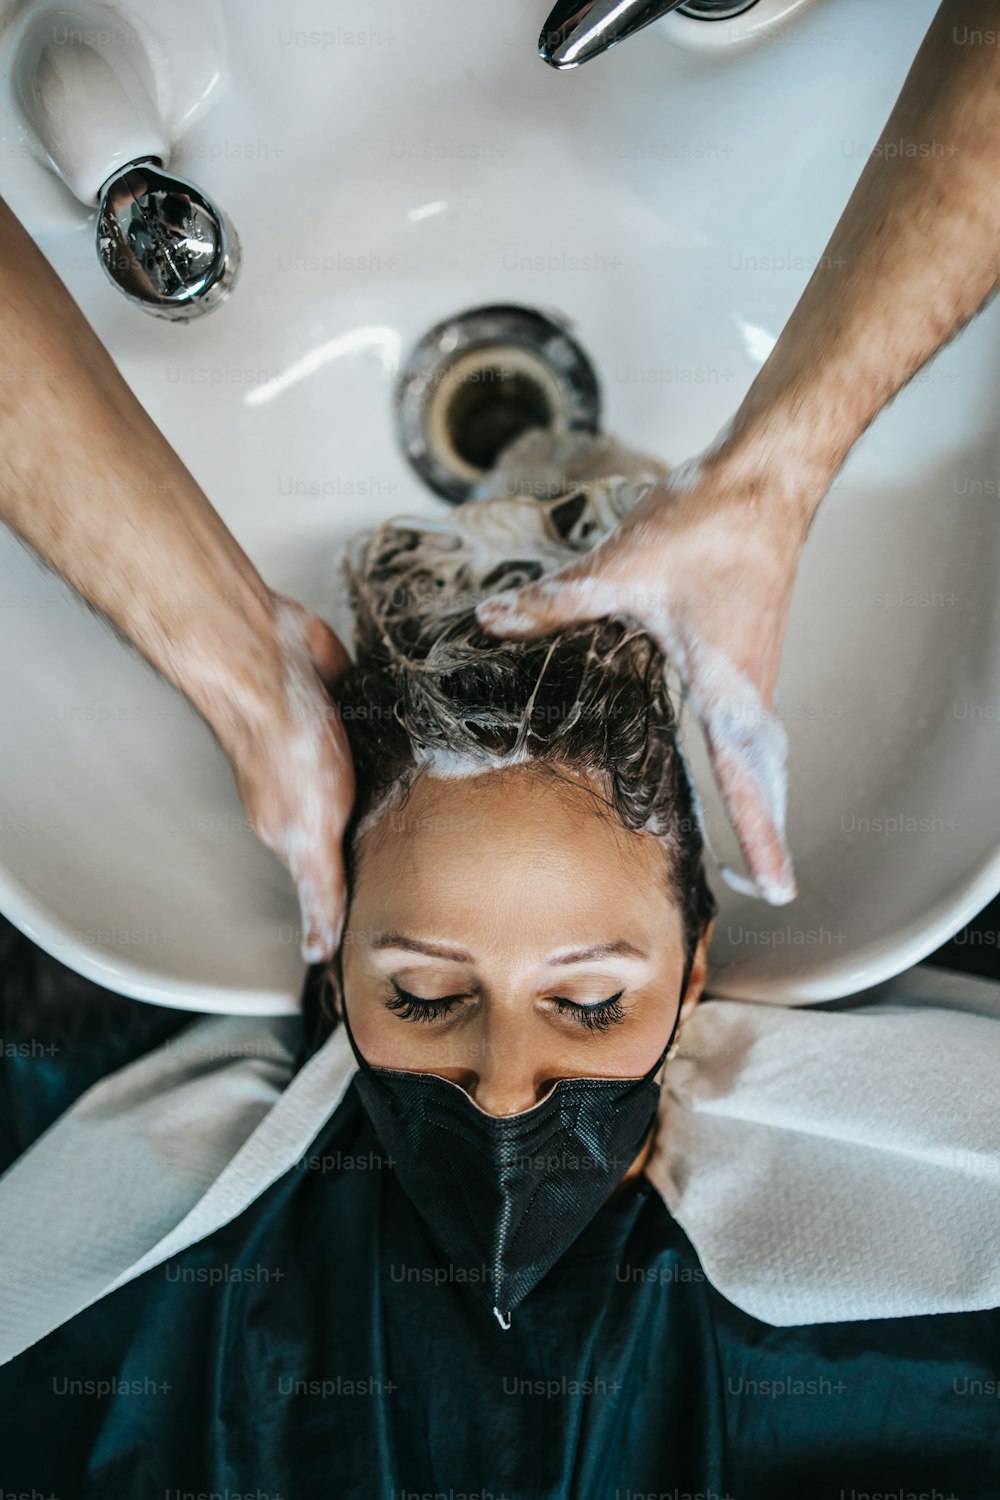 Peluquero lavando el cabello de una hermosa mujer adulta joven en la peluquería. Lleva una mascarilla protectora como protección contra la pandemia del virus.